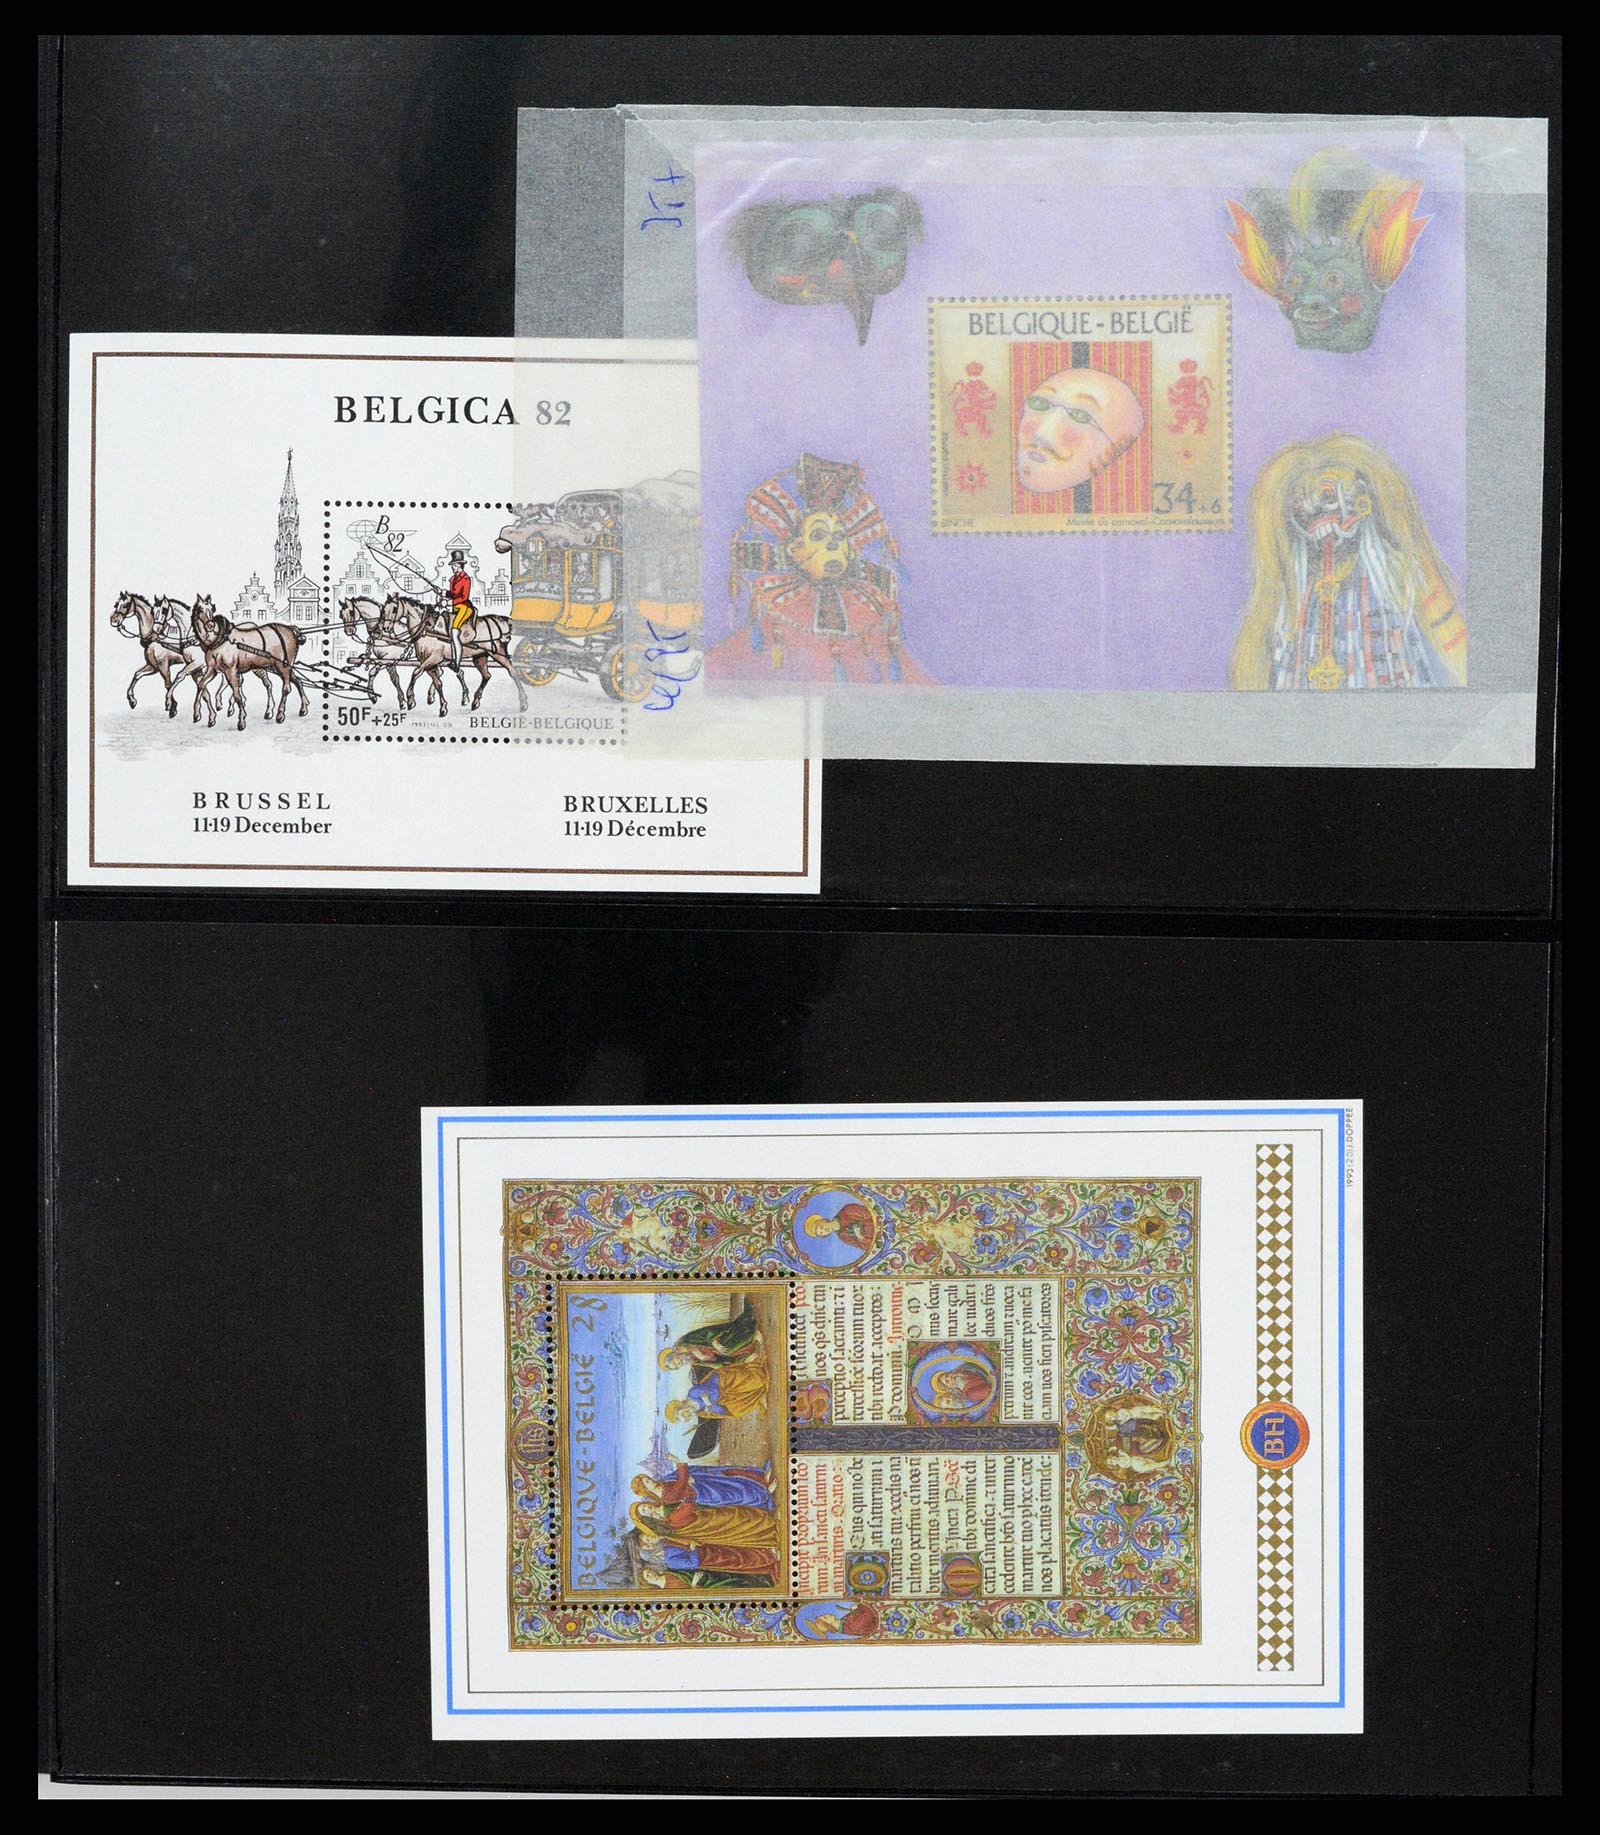 37345 011 - Stamp collection 37345 European countries souvenir sheets.